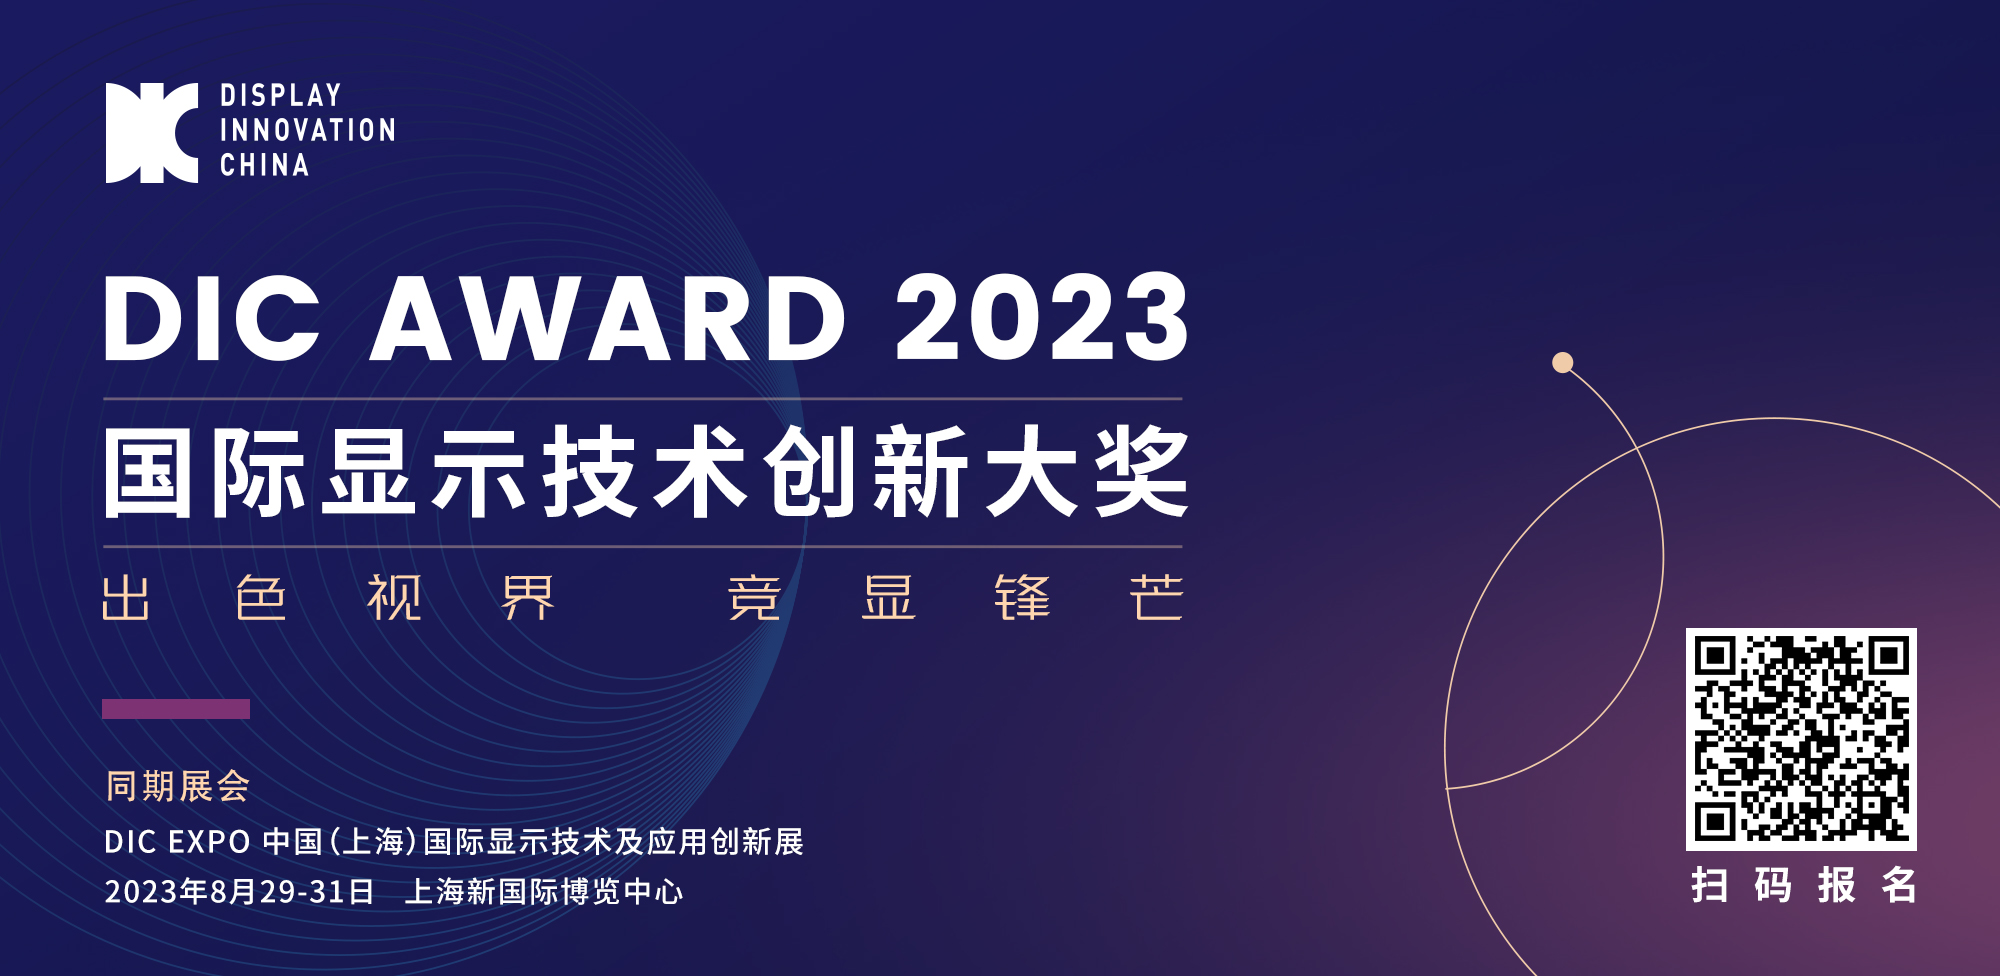 出色视界·竞显锋芒丨DIC AWARD 2023国际显示技术创新大奖申报开启